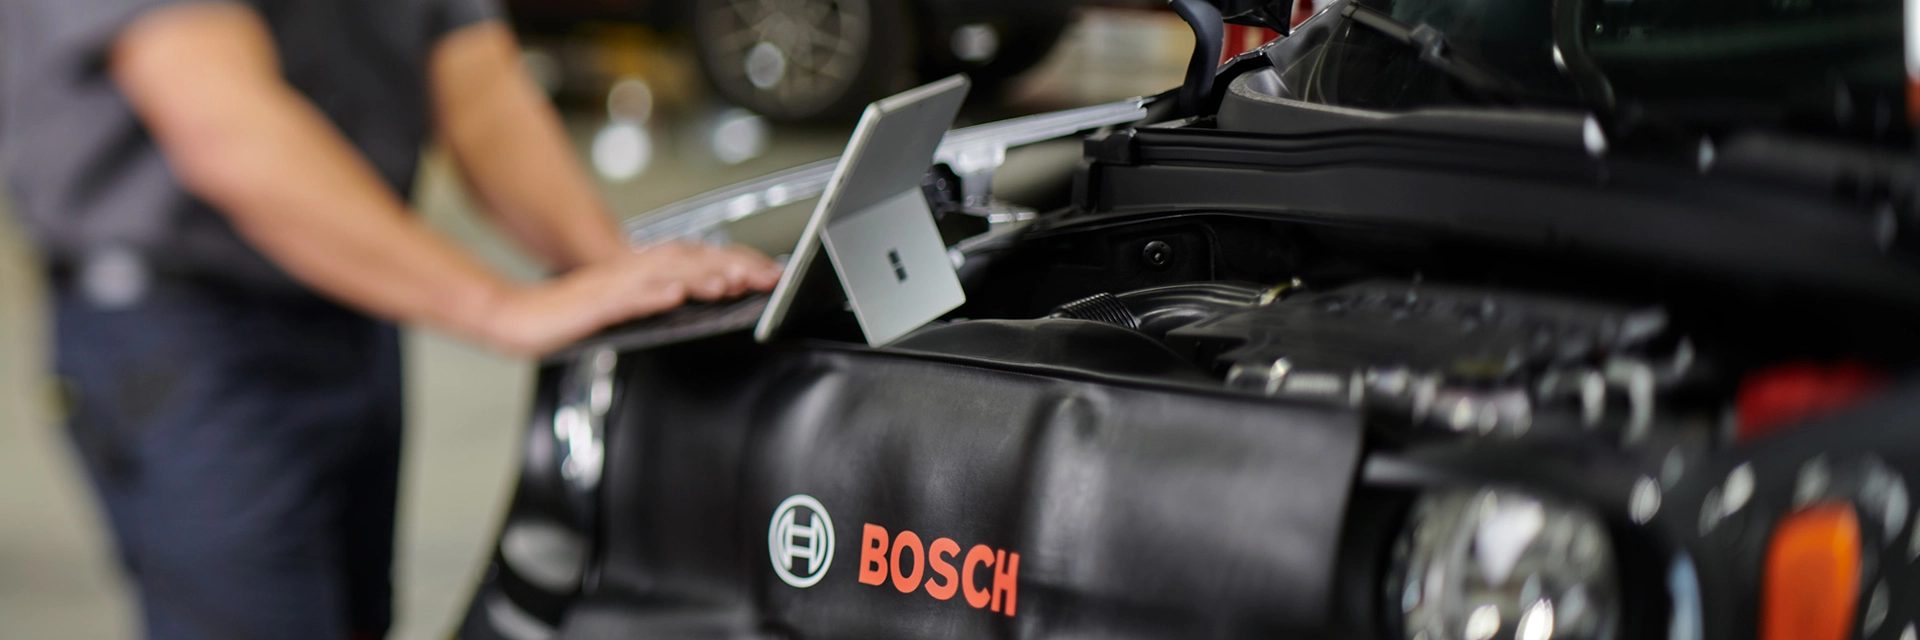 Bosch Auto Service Diagnostics